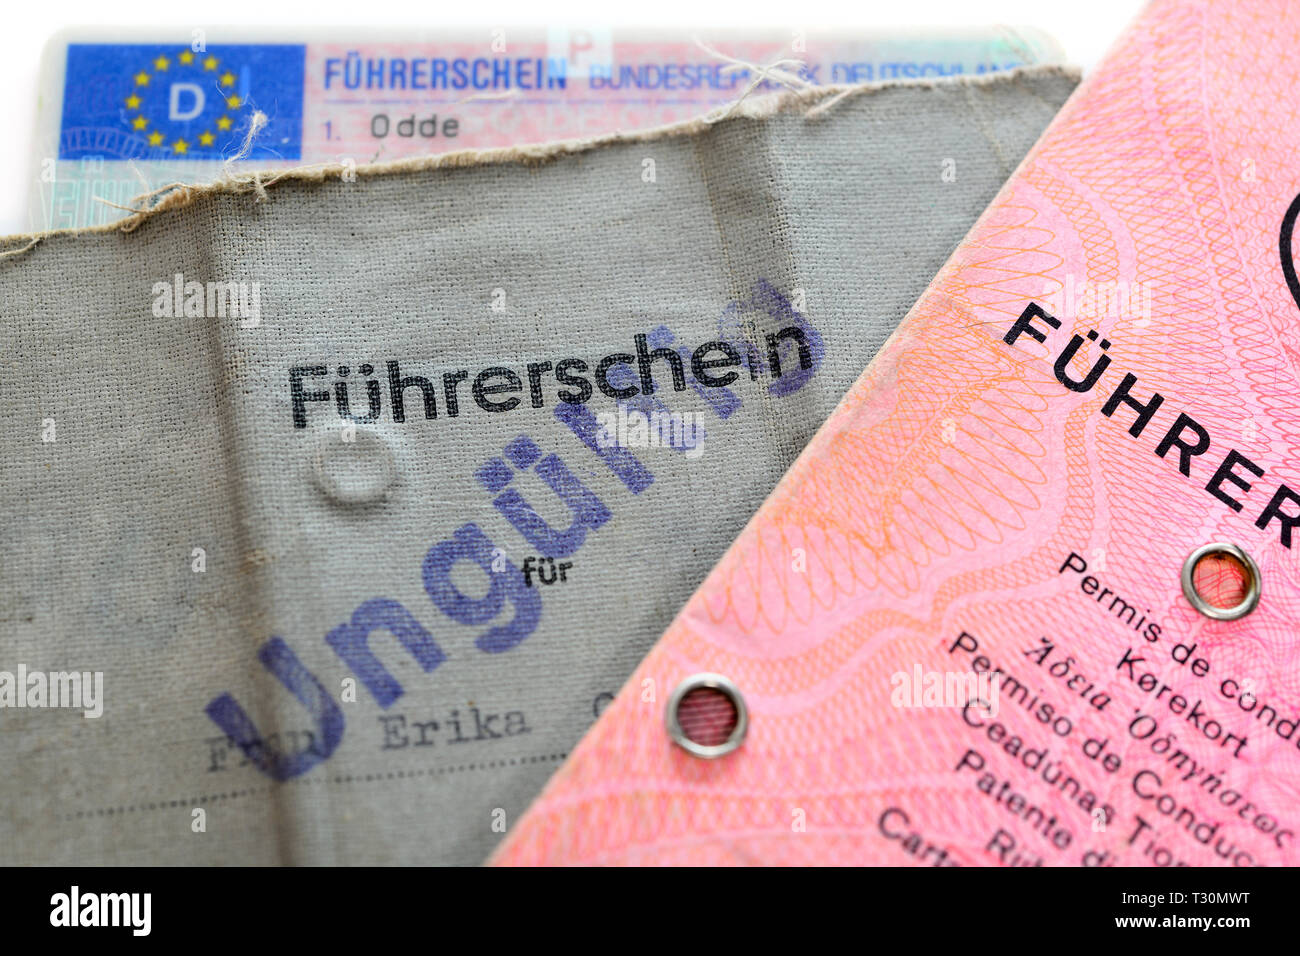 Old and topical German driving licences, Alte und aktuelle deutsche Führerscheine Stock Photo